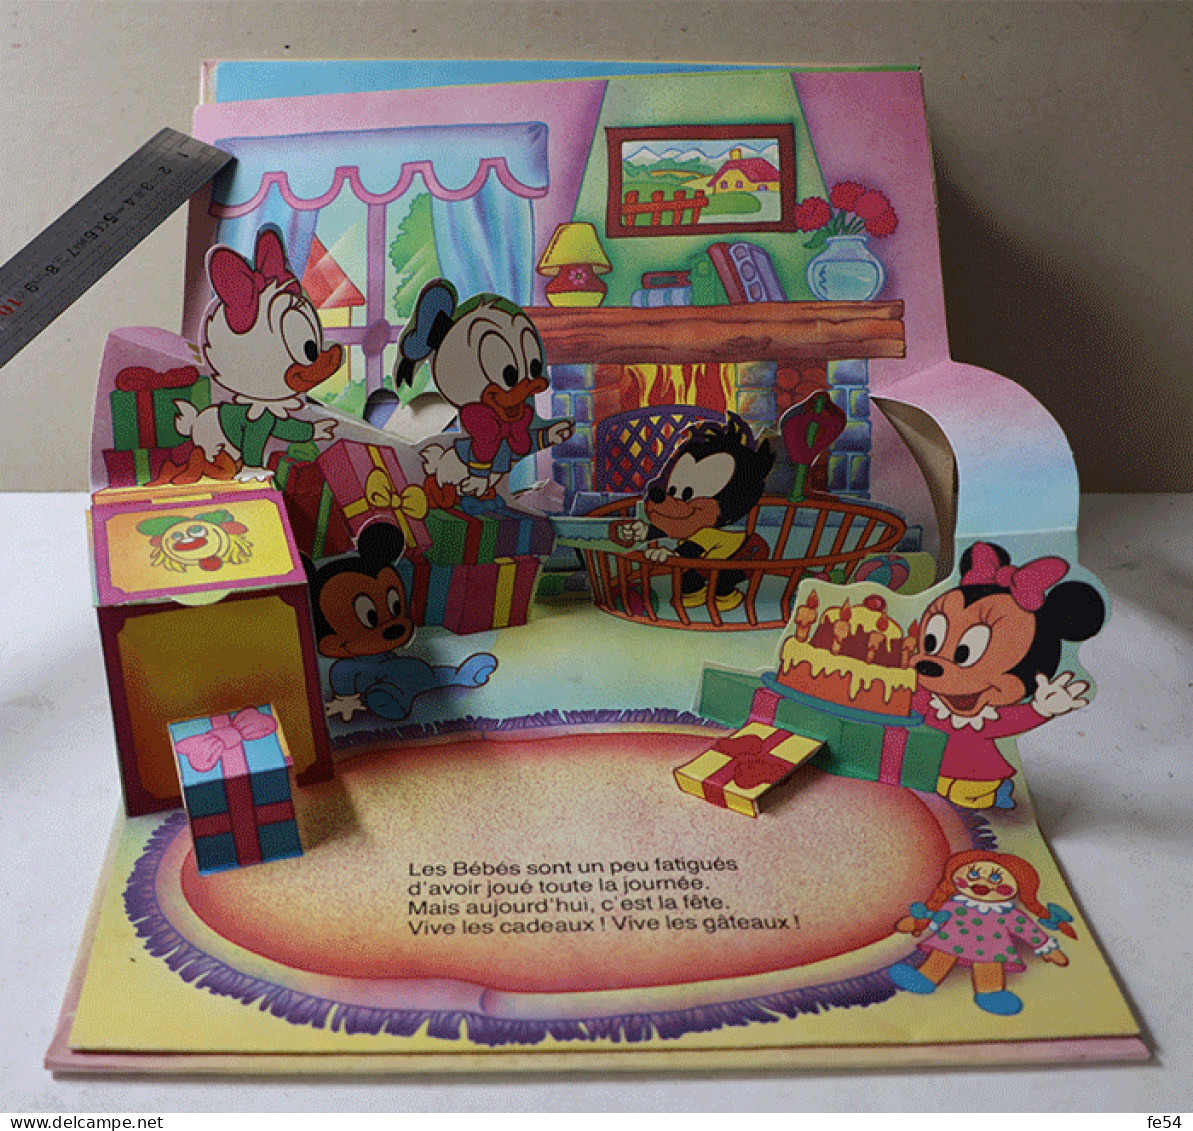 ° Livre à système, livre animé, pop-up, pop-hop ° VIVE LES BEBES - Walt Disney ° Hachette 1987 °